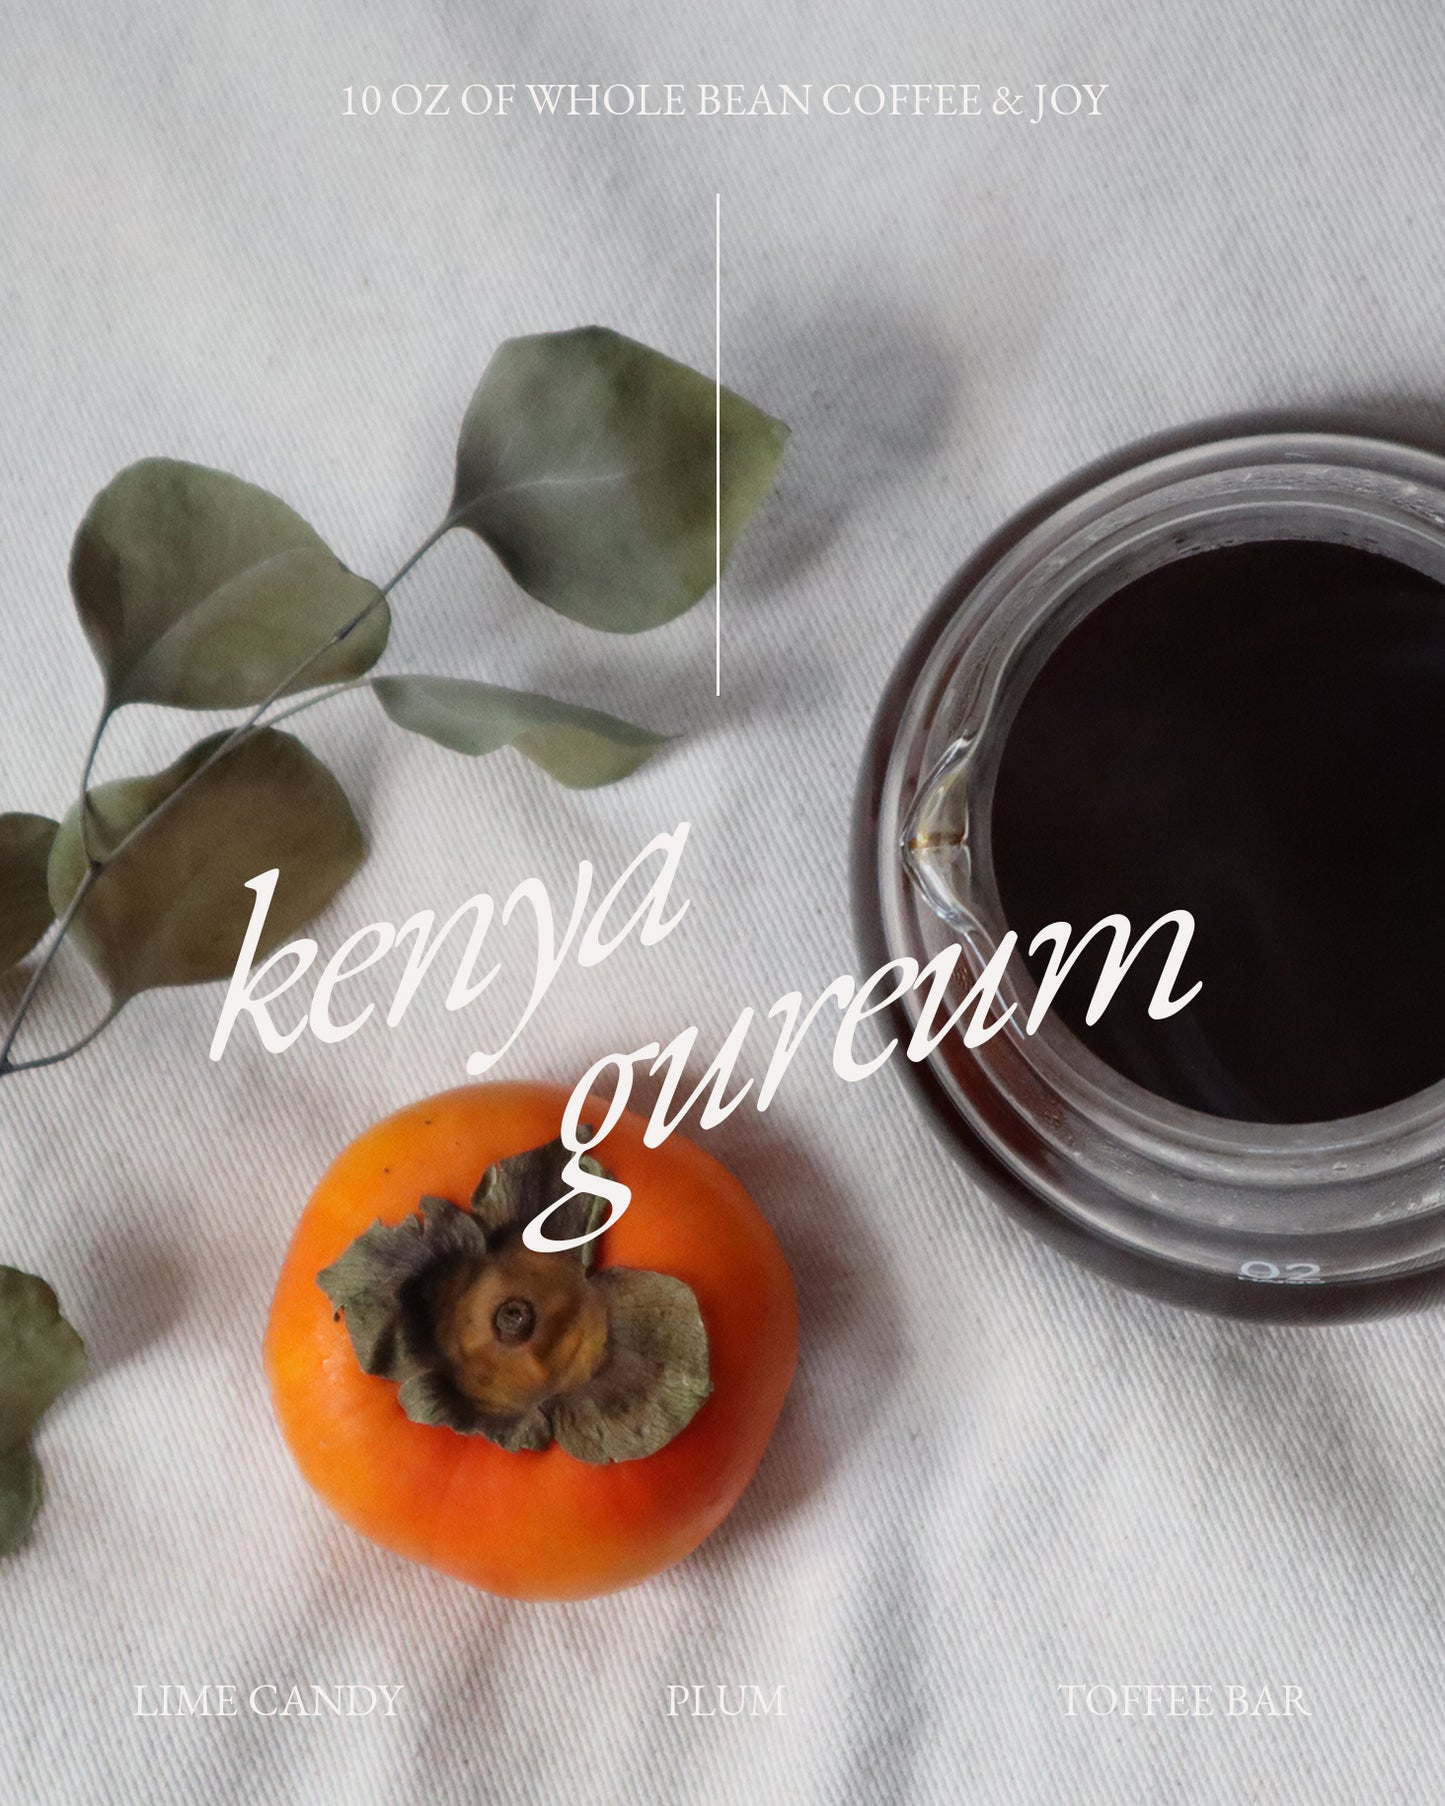 Kenya Gureum